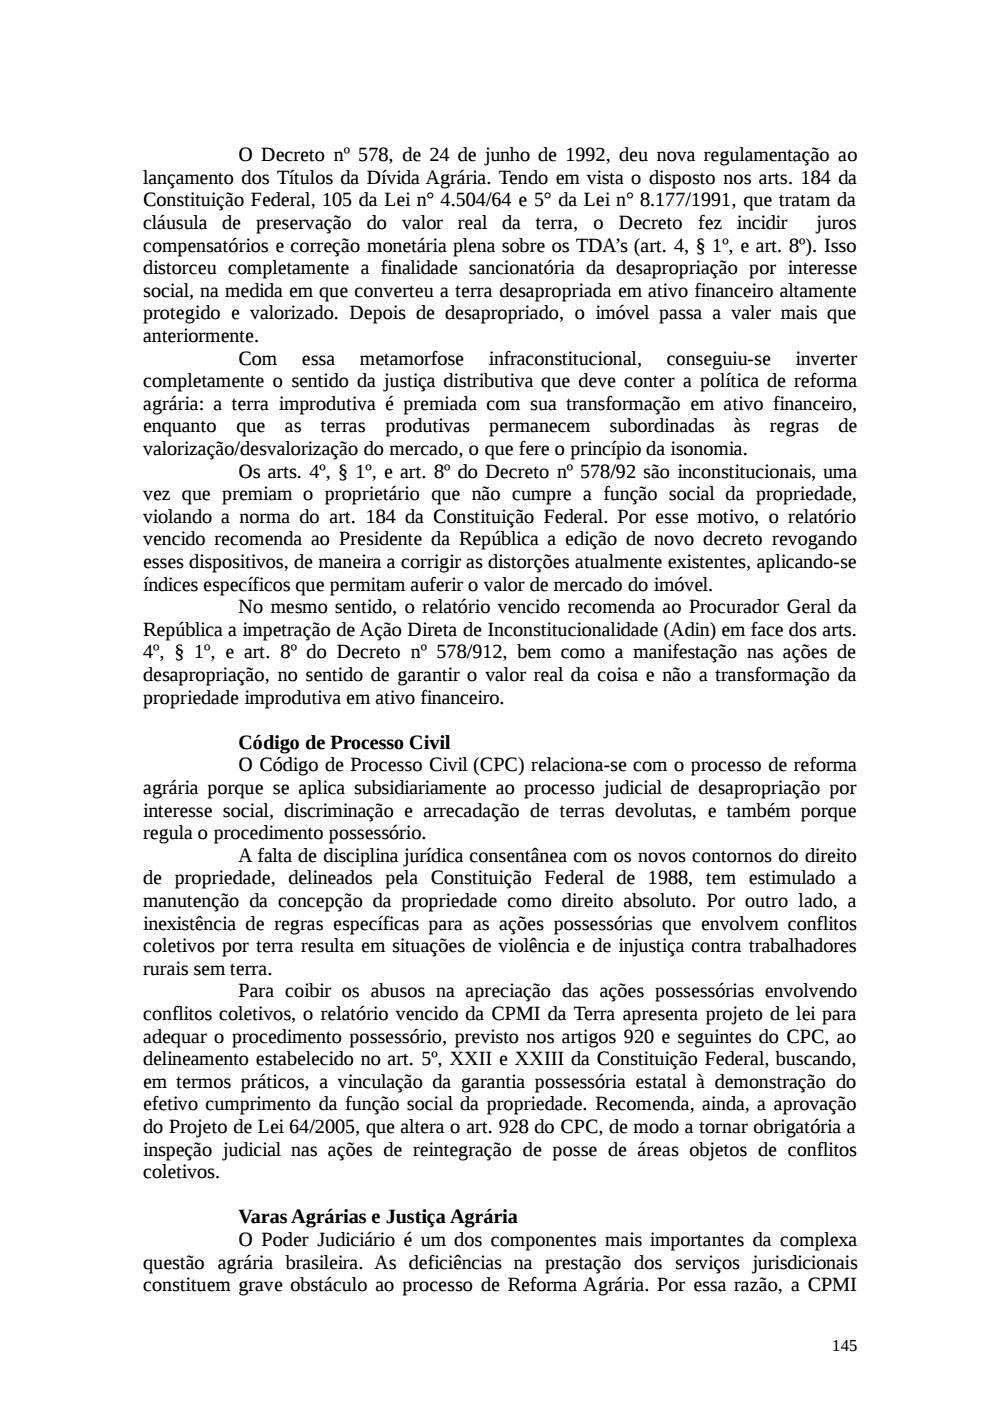 Page 145 from Relatório final da comissão